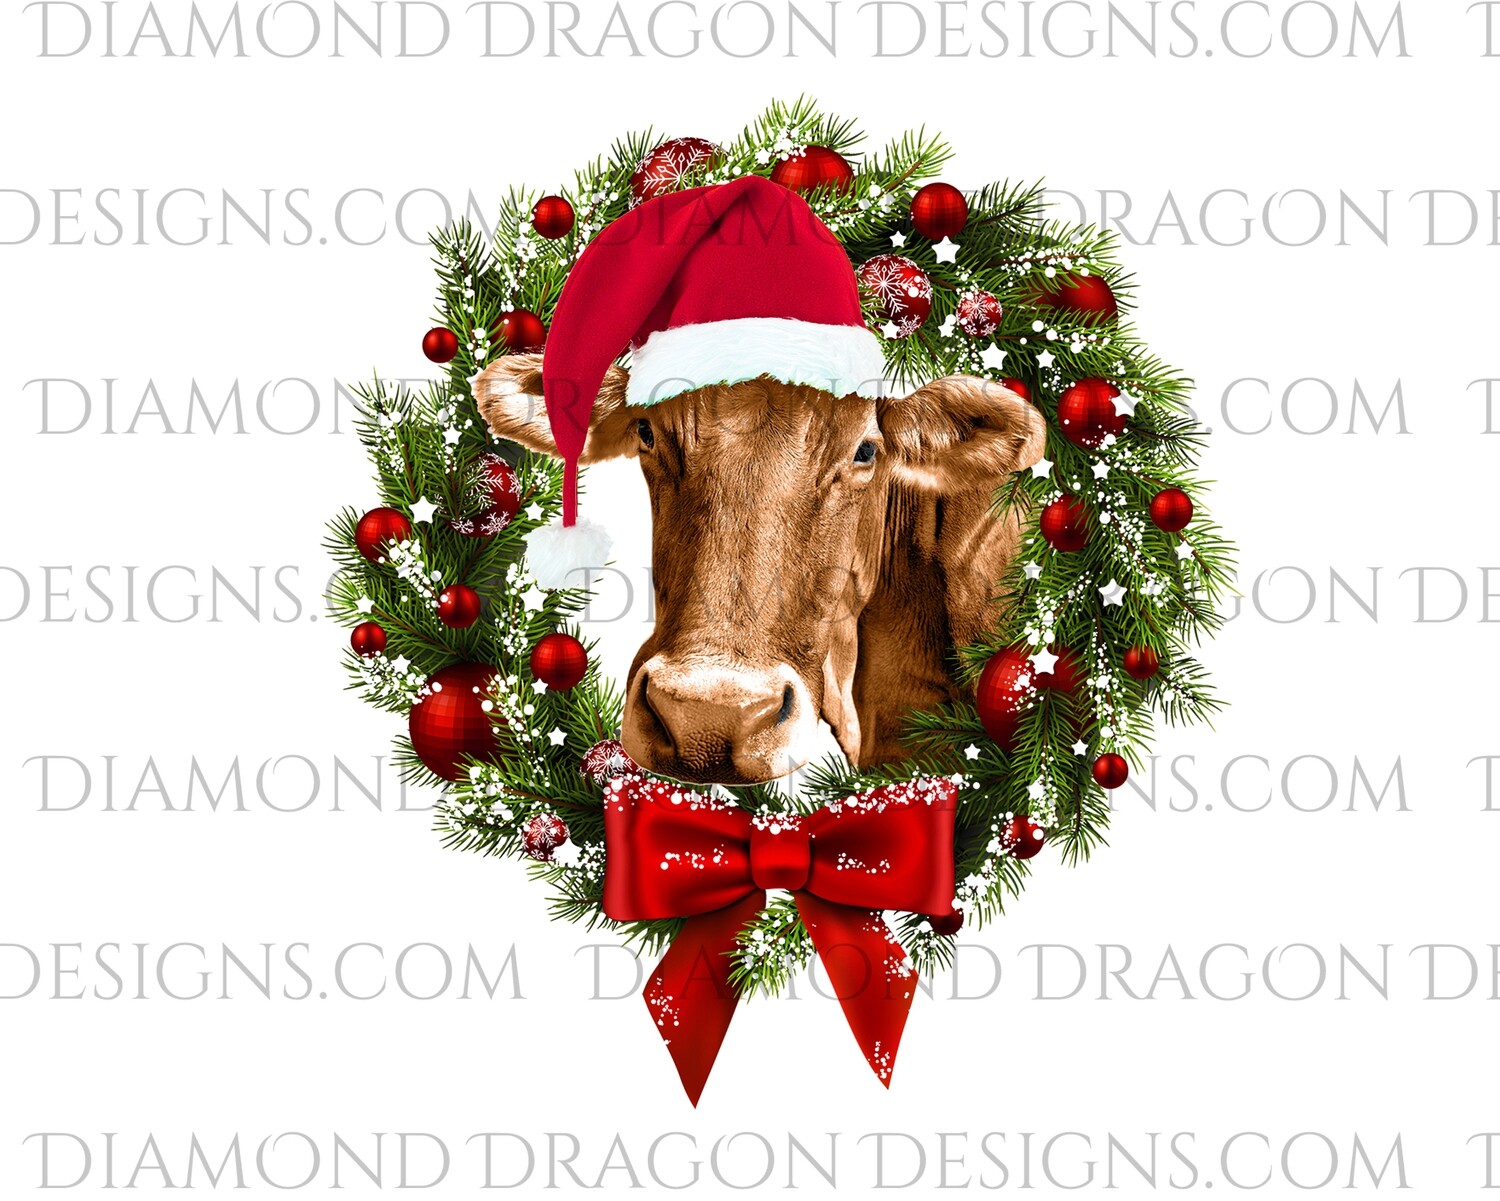 Cows - Cute Christmas Wreath Cow, Santa Cow, Digital Image